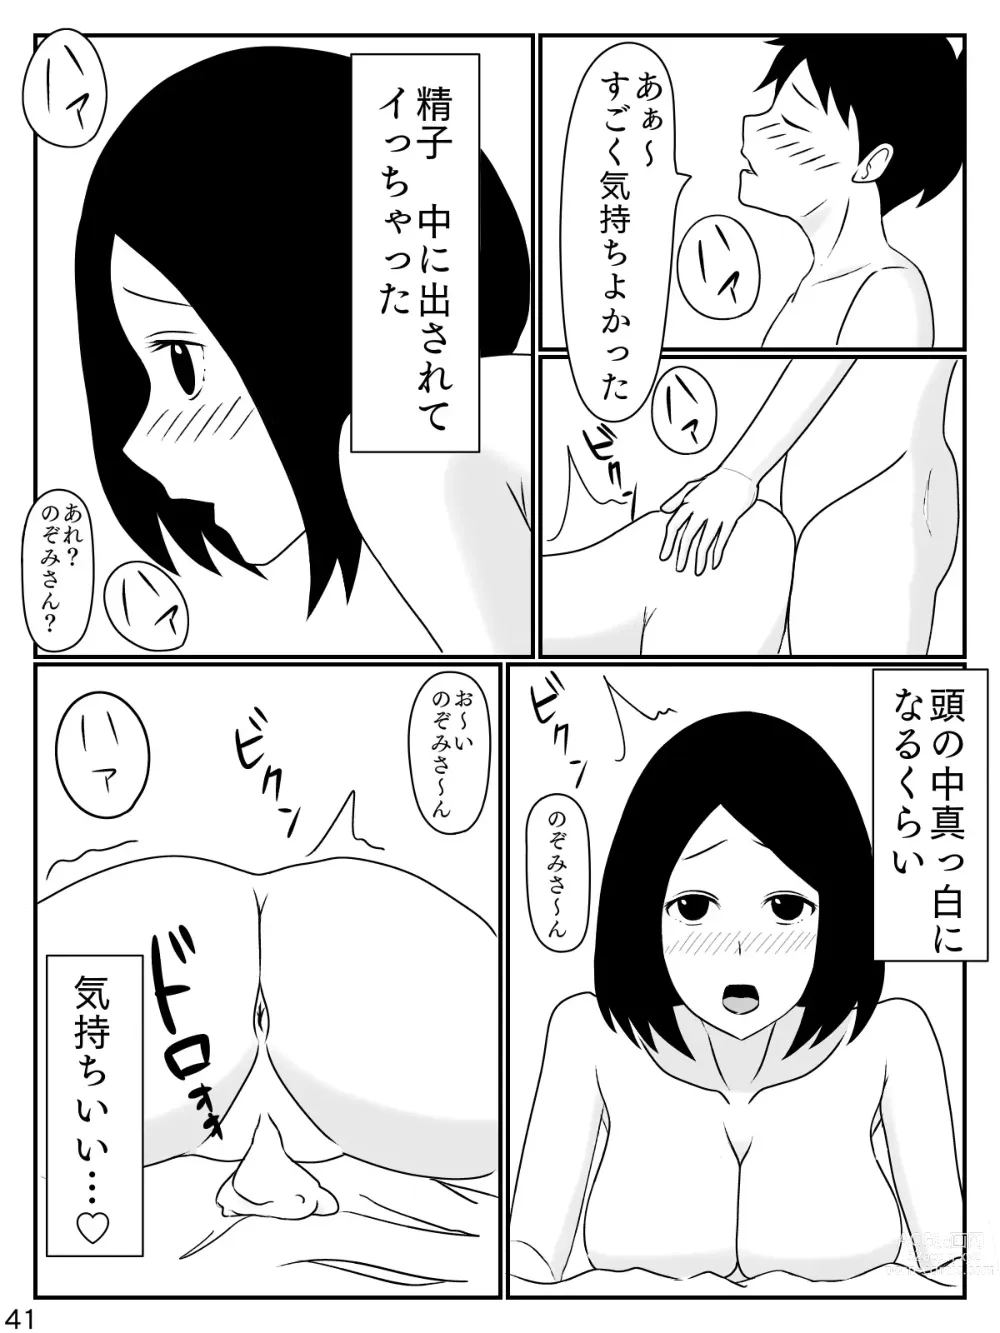 Page 42 of doujinshi 6-tsu Chigai no Okaasan